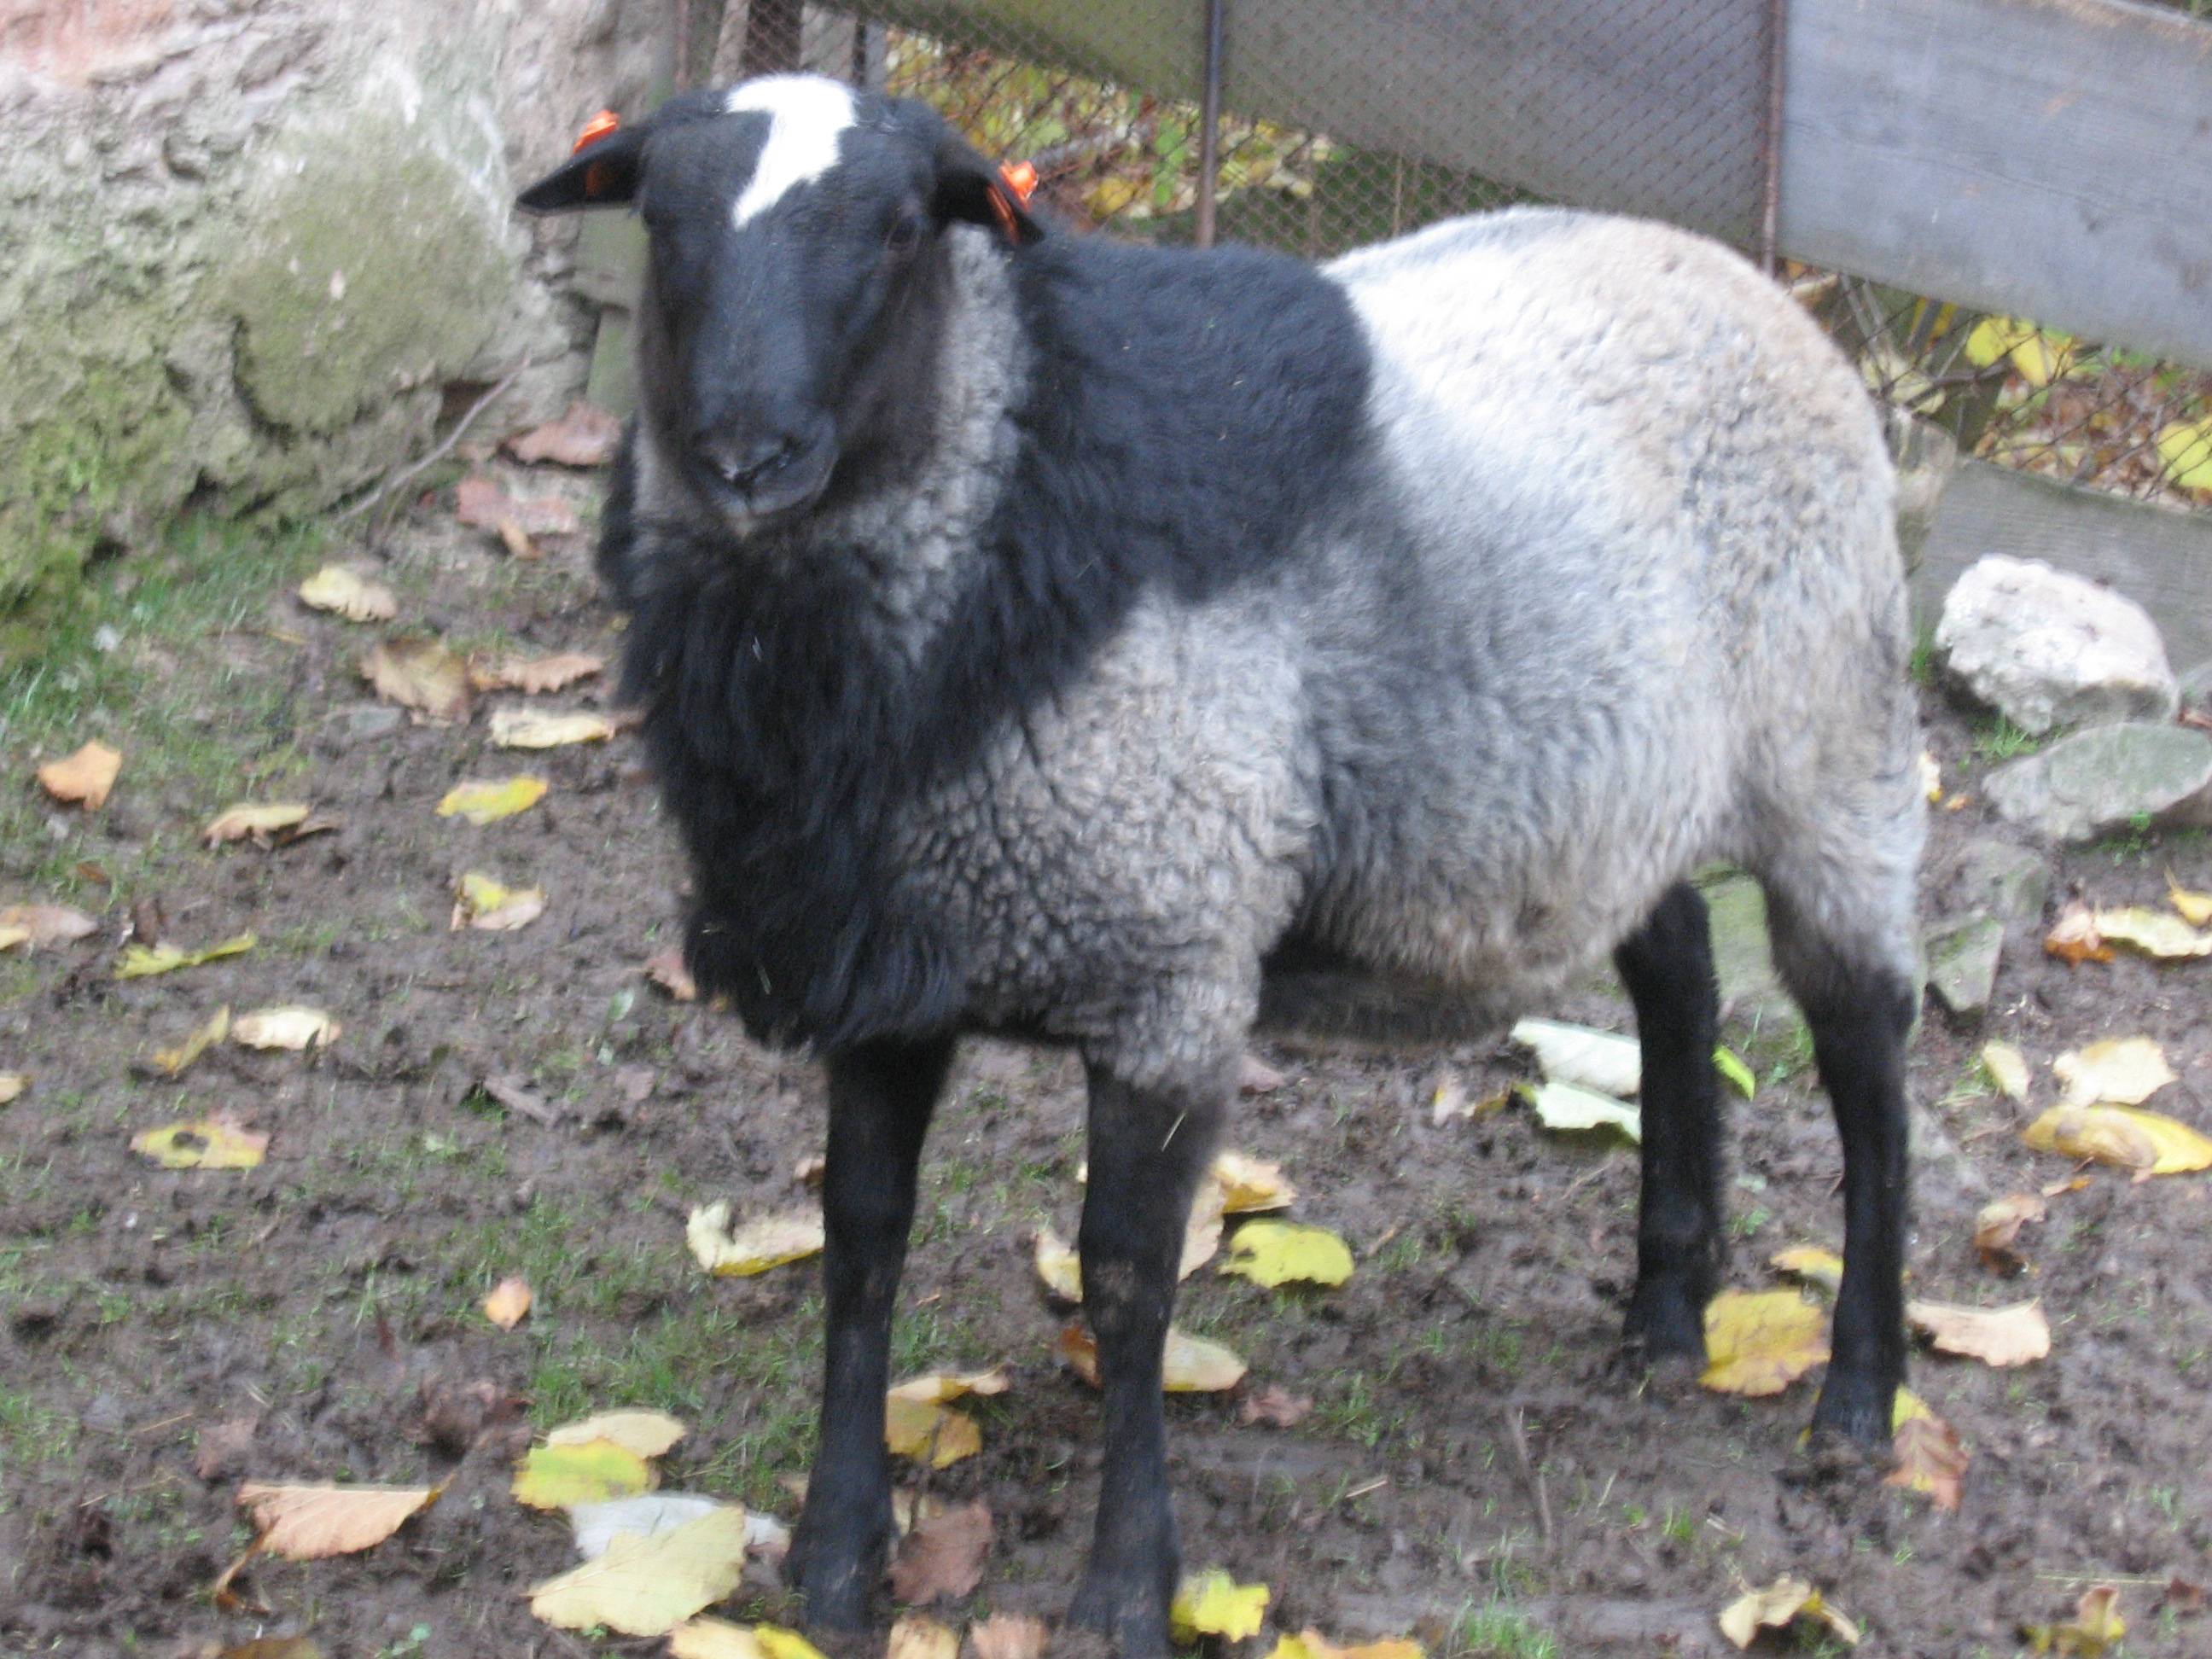 Разведение романовских овец, плюсы и минусы породы